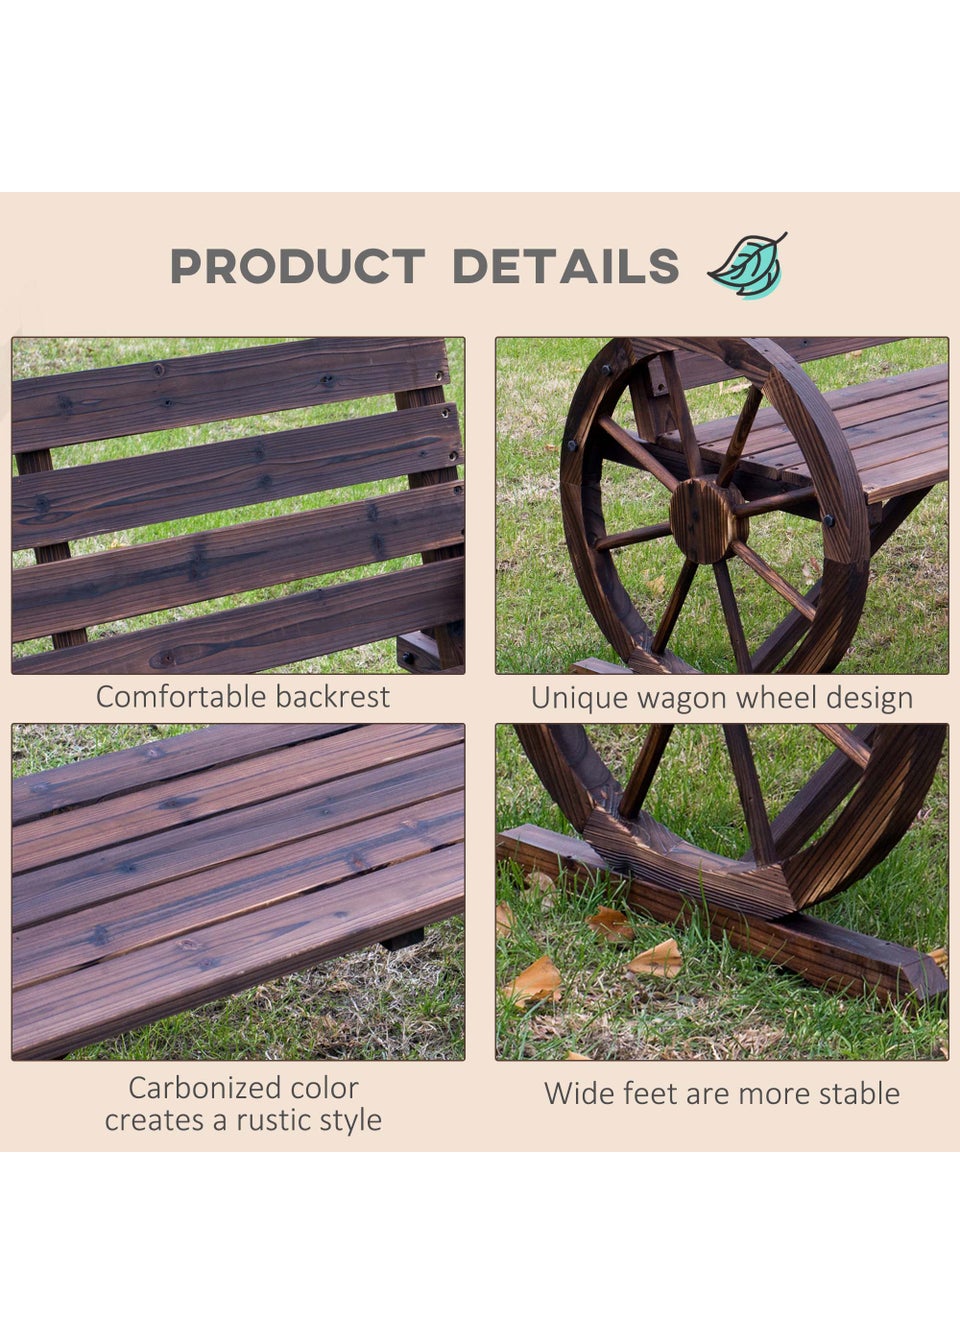 Outsunny Wooden Wagon Wheel 2 Seater Garden Bench (105.5cm x 56cm x 75cm)